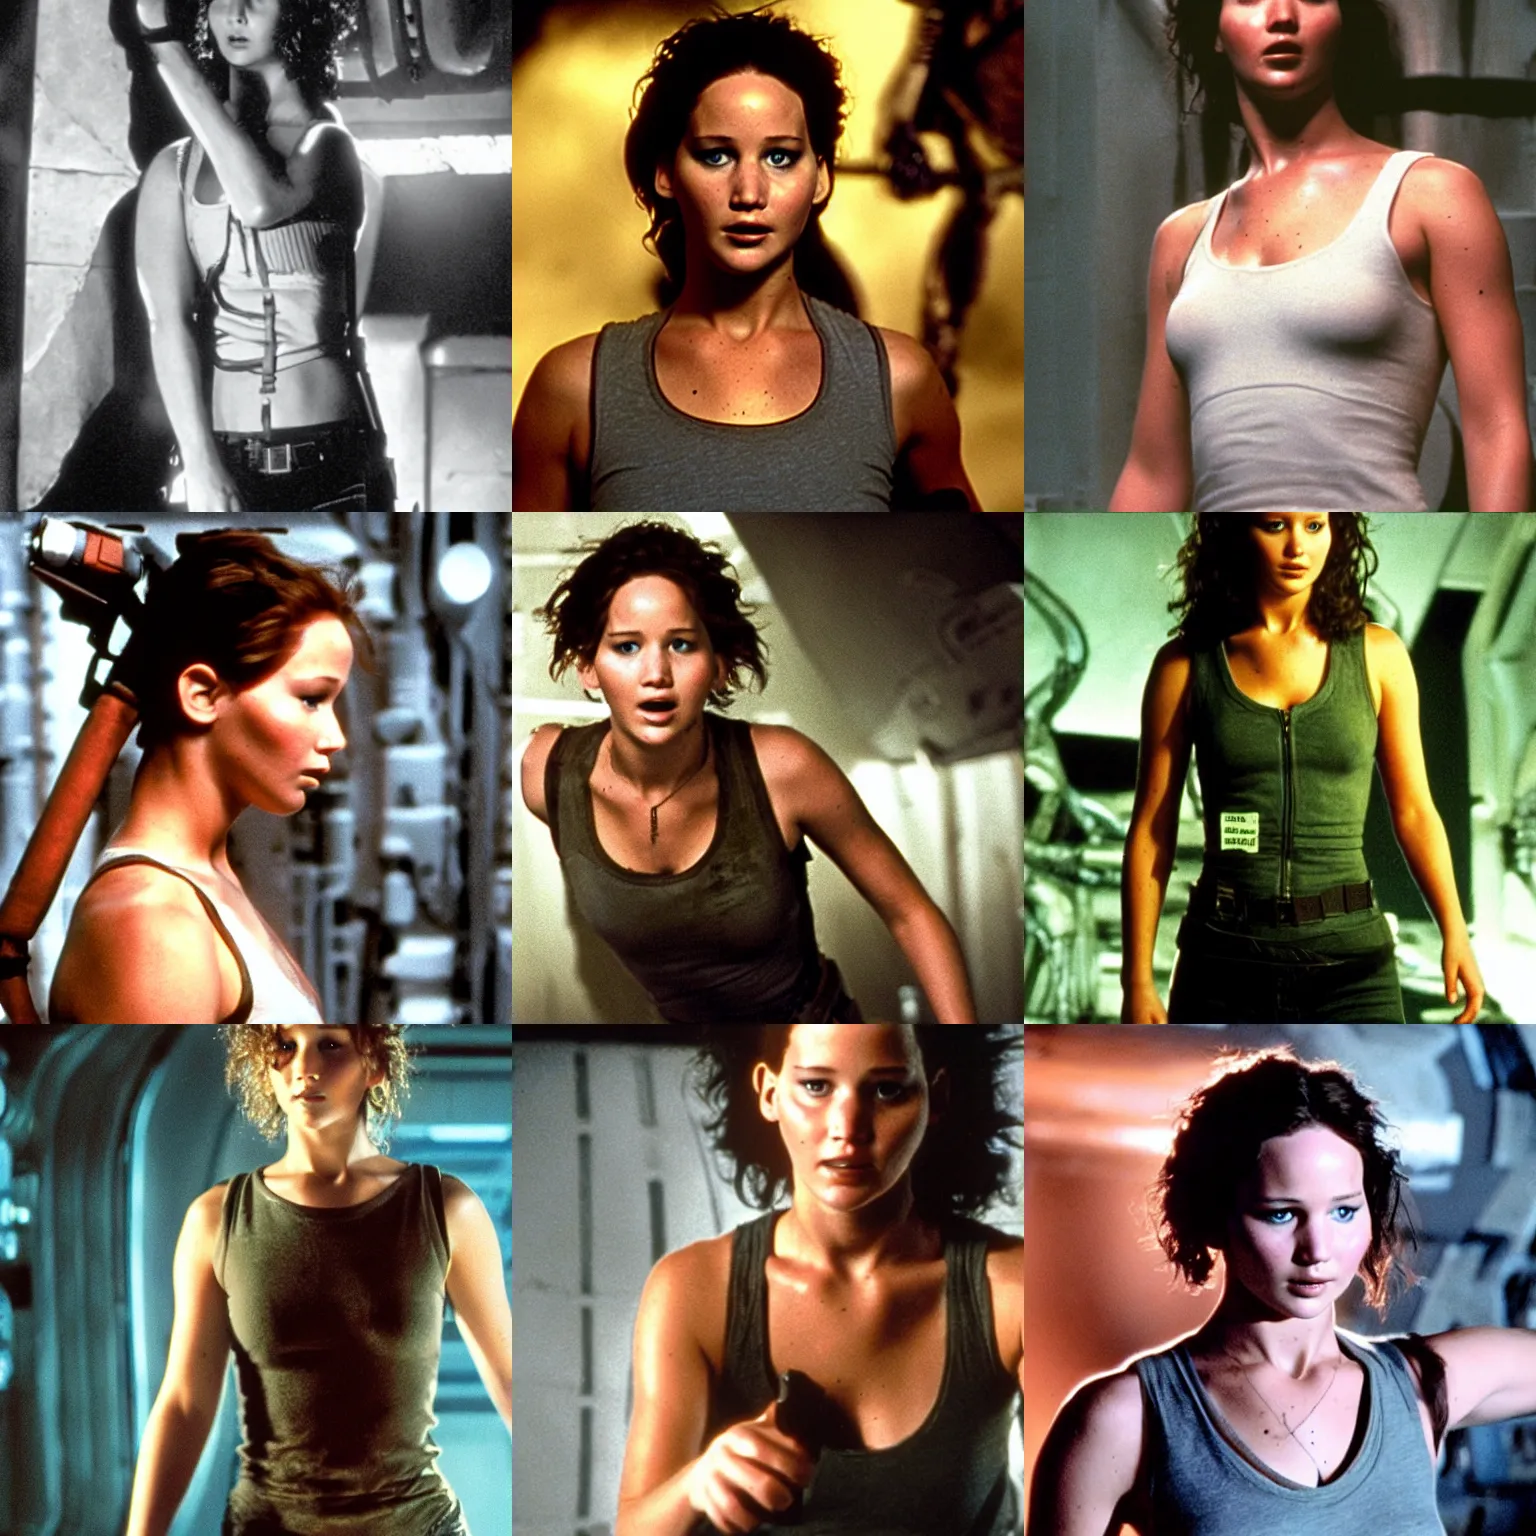 Prompt: Jennifer Lawrence as Ripley from Alien, wearing a sleeveless shirt, film still